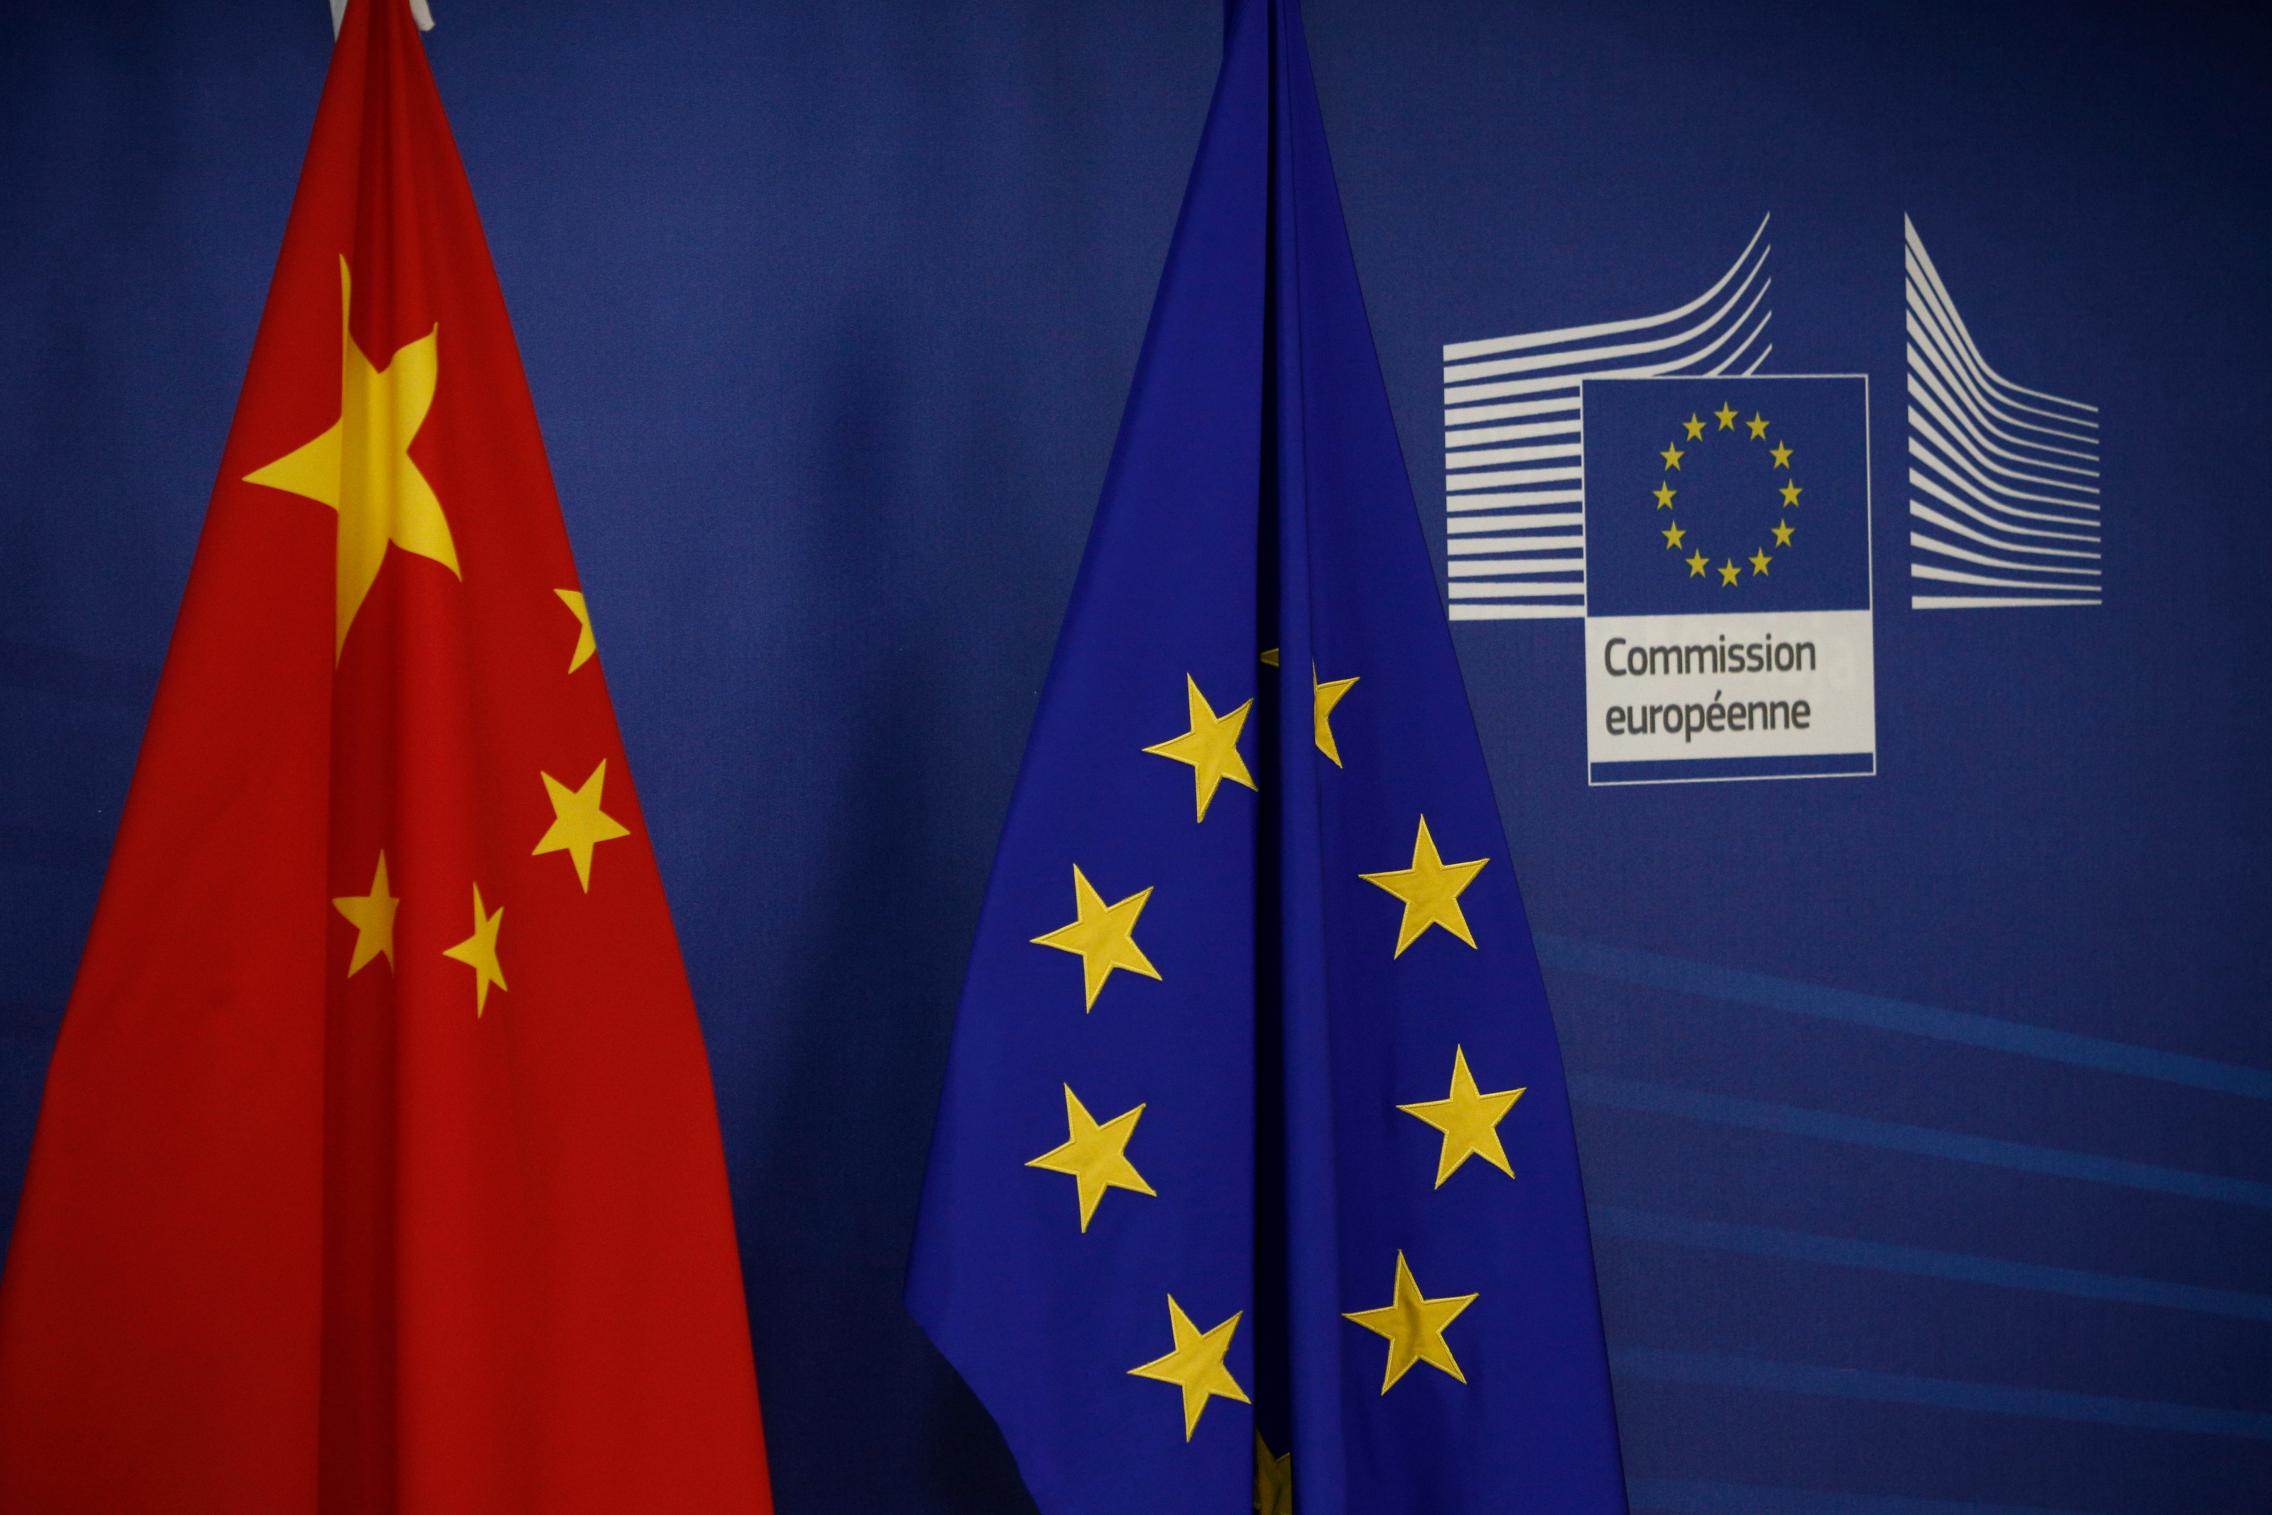 EU _China Flag